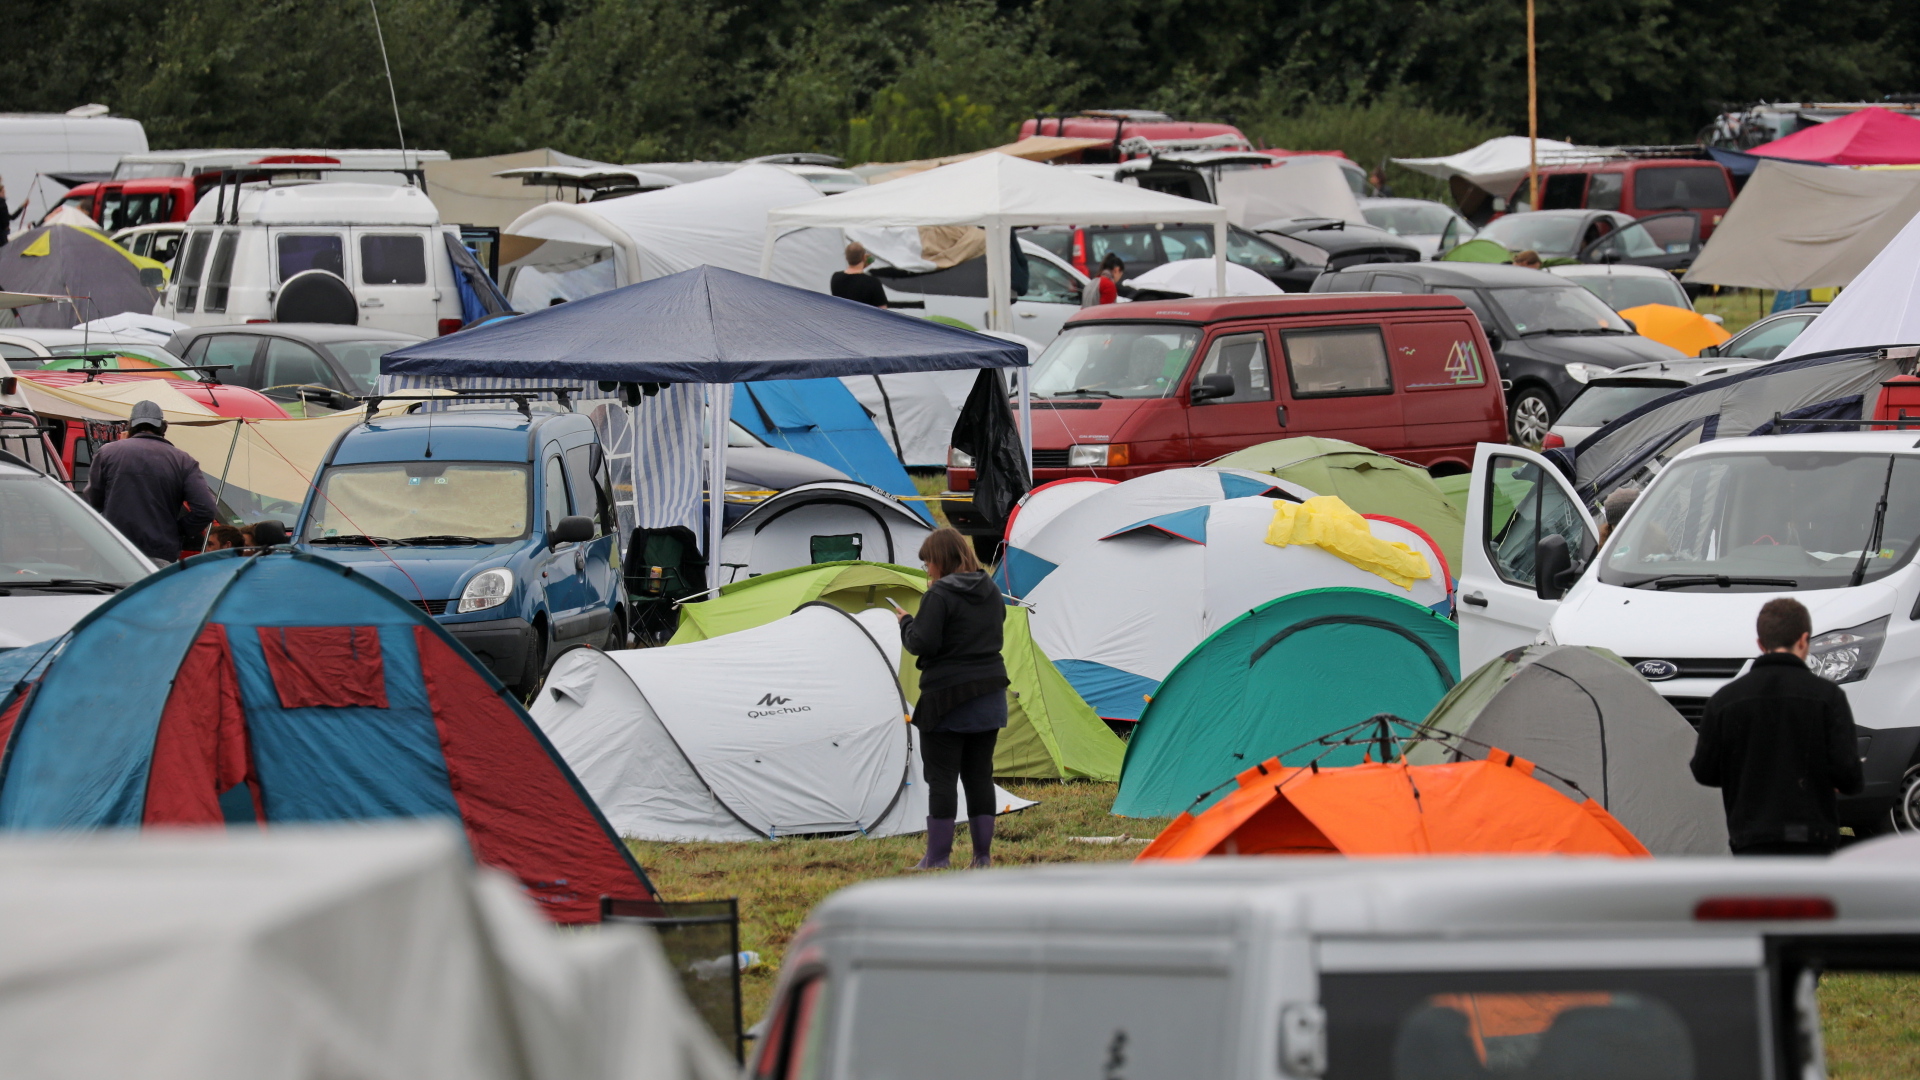 Gäste des Festivals "Plan:et C" auf dem ehemaligen russischen Militärflugplatz in Lärz haben ihre Zelte aufgebaut und ihre Wohnmobile abgestellt. | dpa